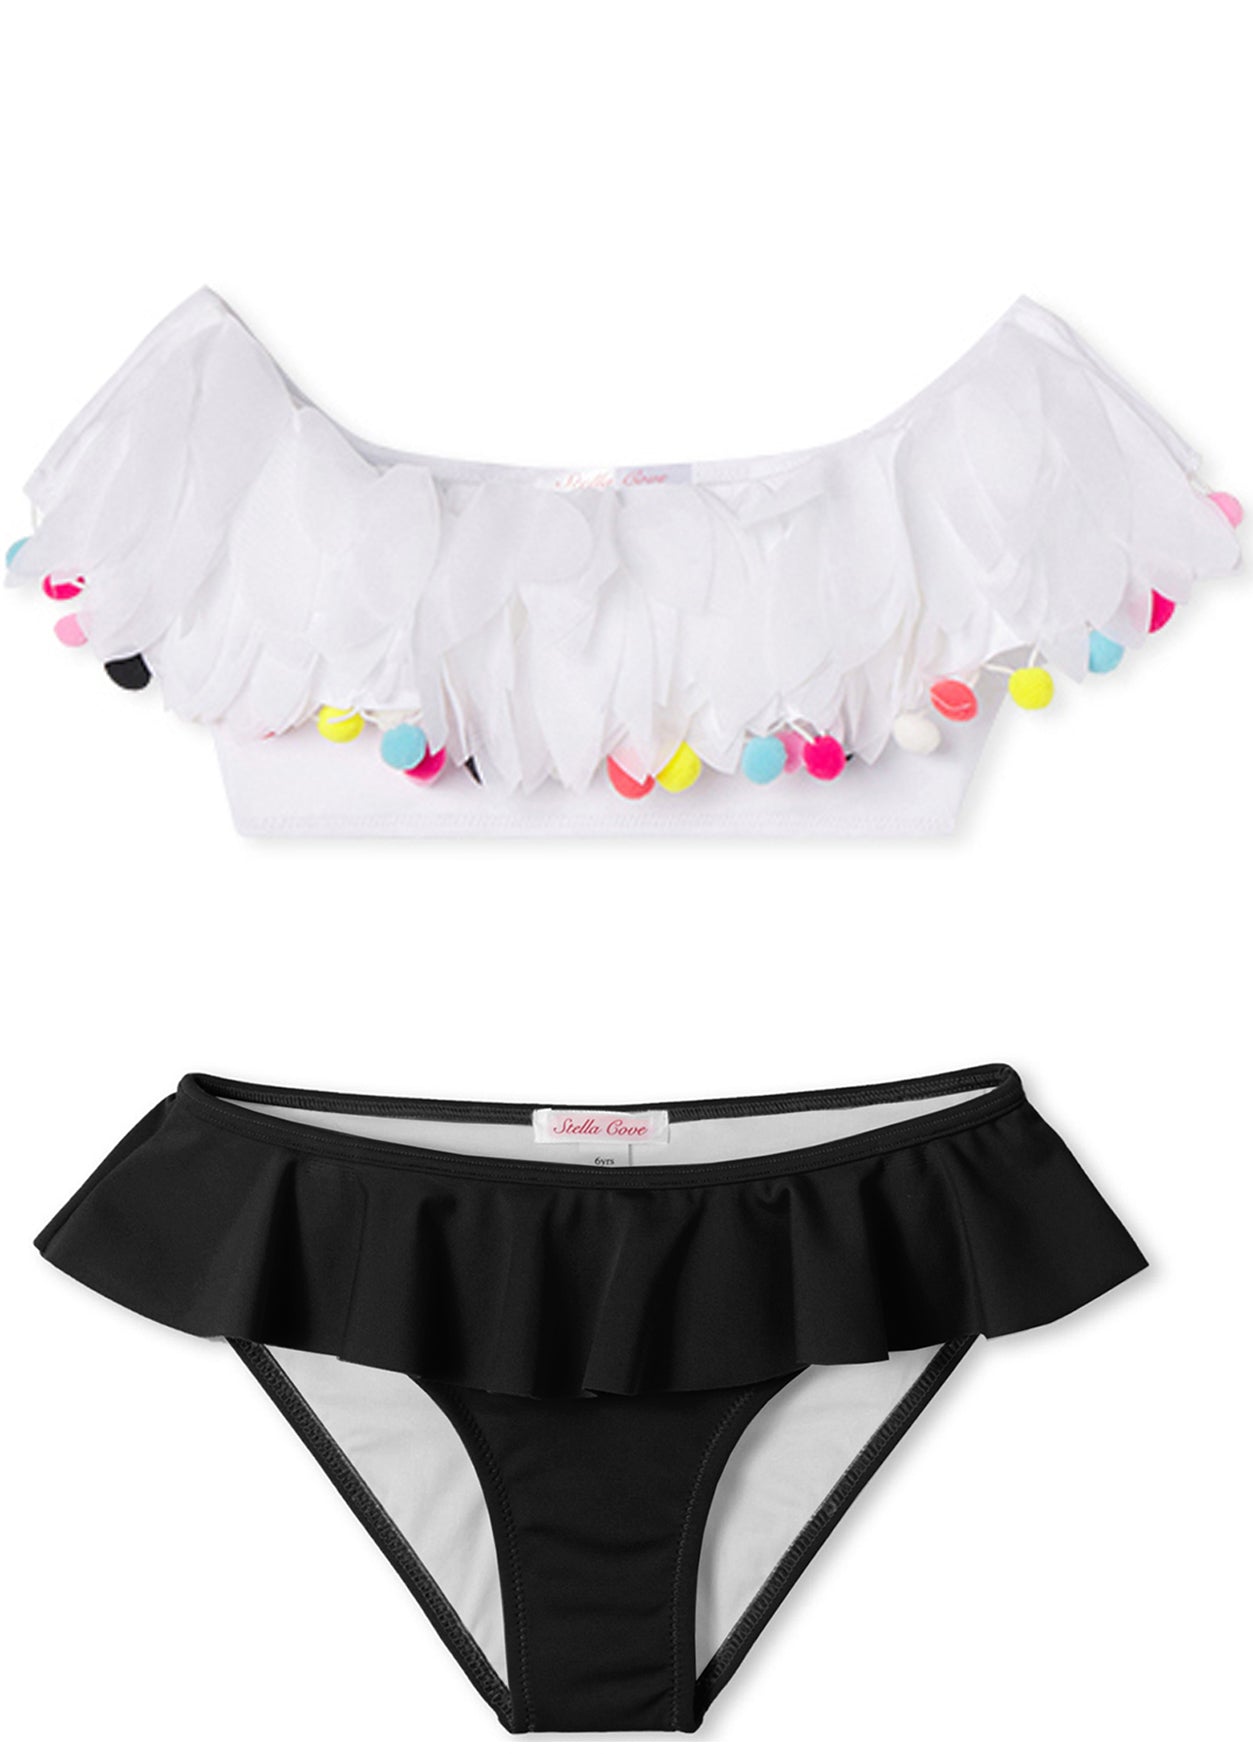 White & Black Bikini with Petals-Multicolor Pompoms